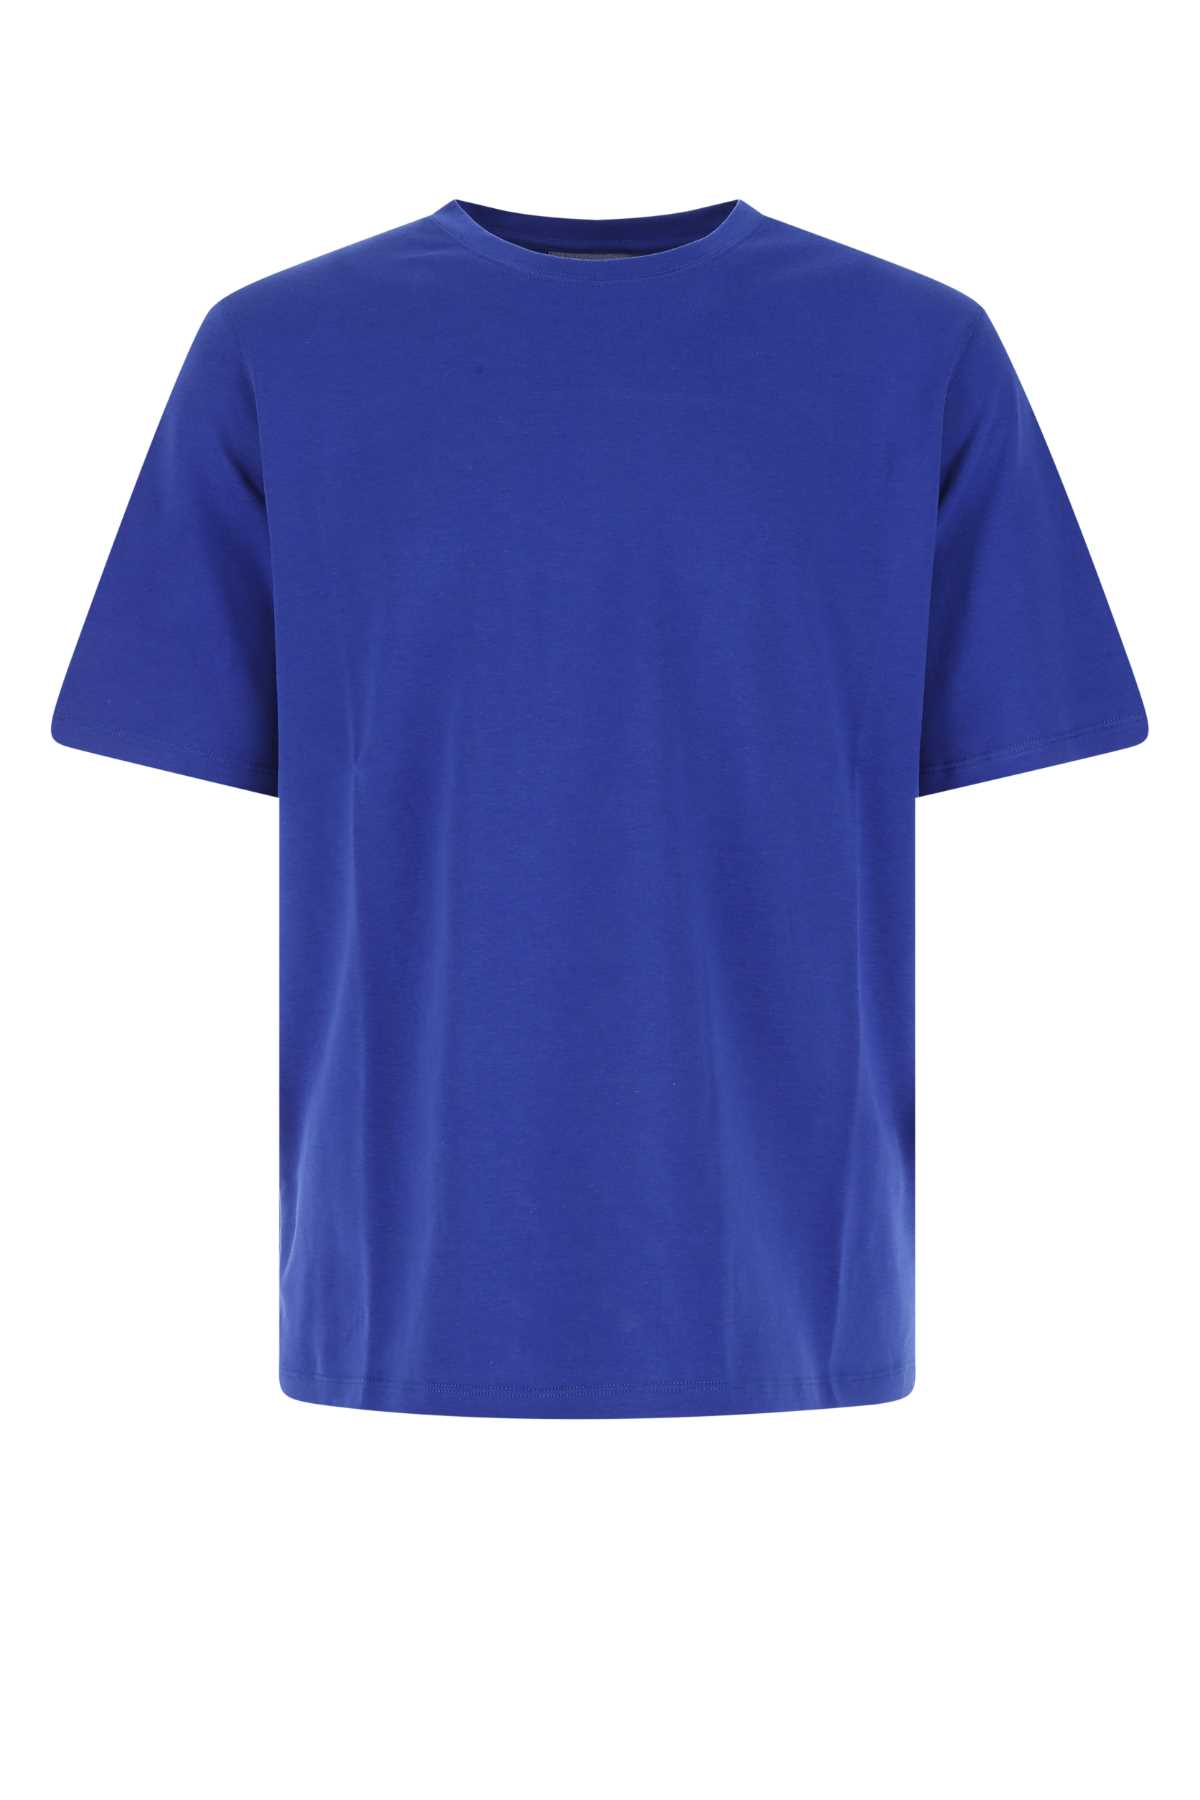 Electric Blue Cotton Oversize T-shirt